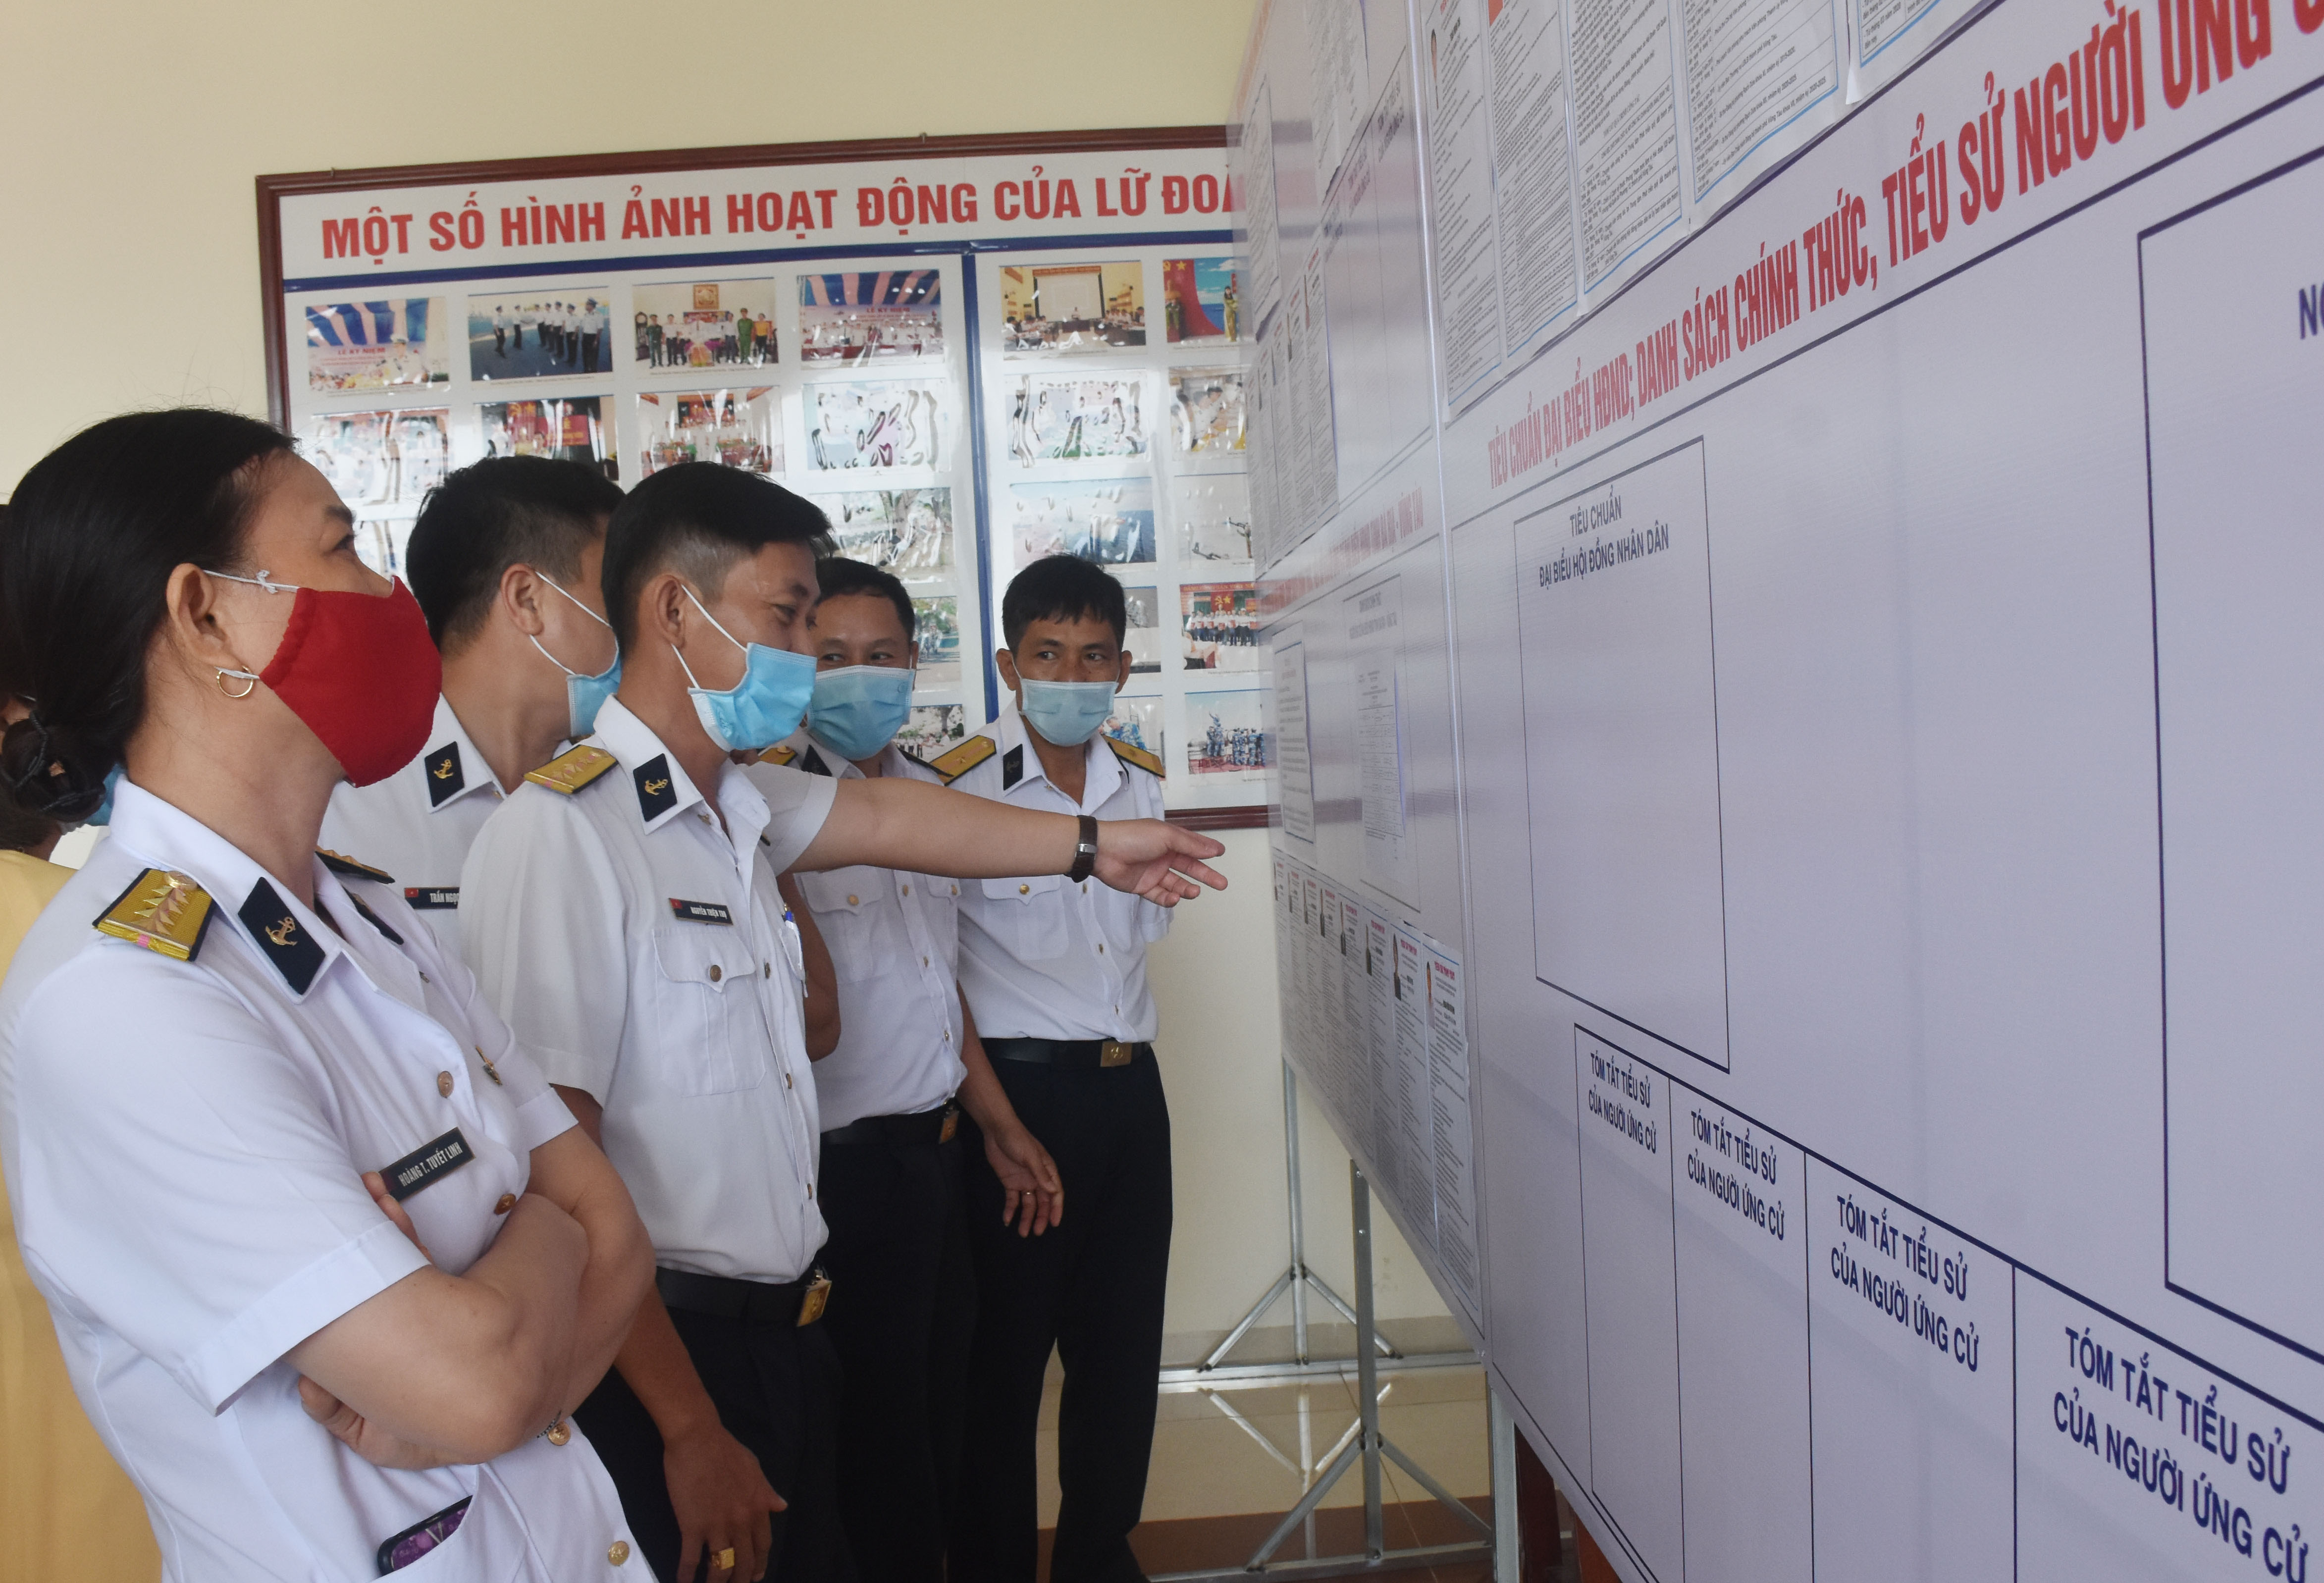 Các cử tri thuộc các đơn vị lực lượng vũ trang làm nhiệm vụ trên biển xem danh sách ứng cử viên ĐBQH, đại biểu HĐND các cấp niêm yết tại địa điểm bỏ phiếu.